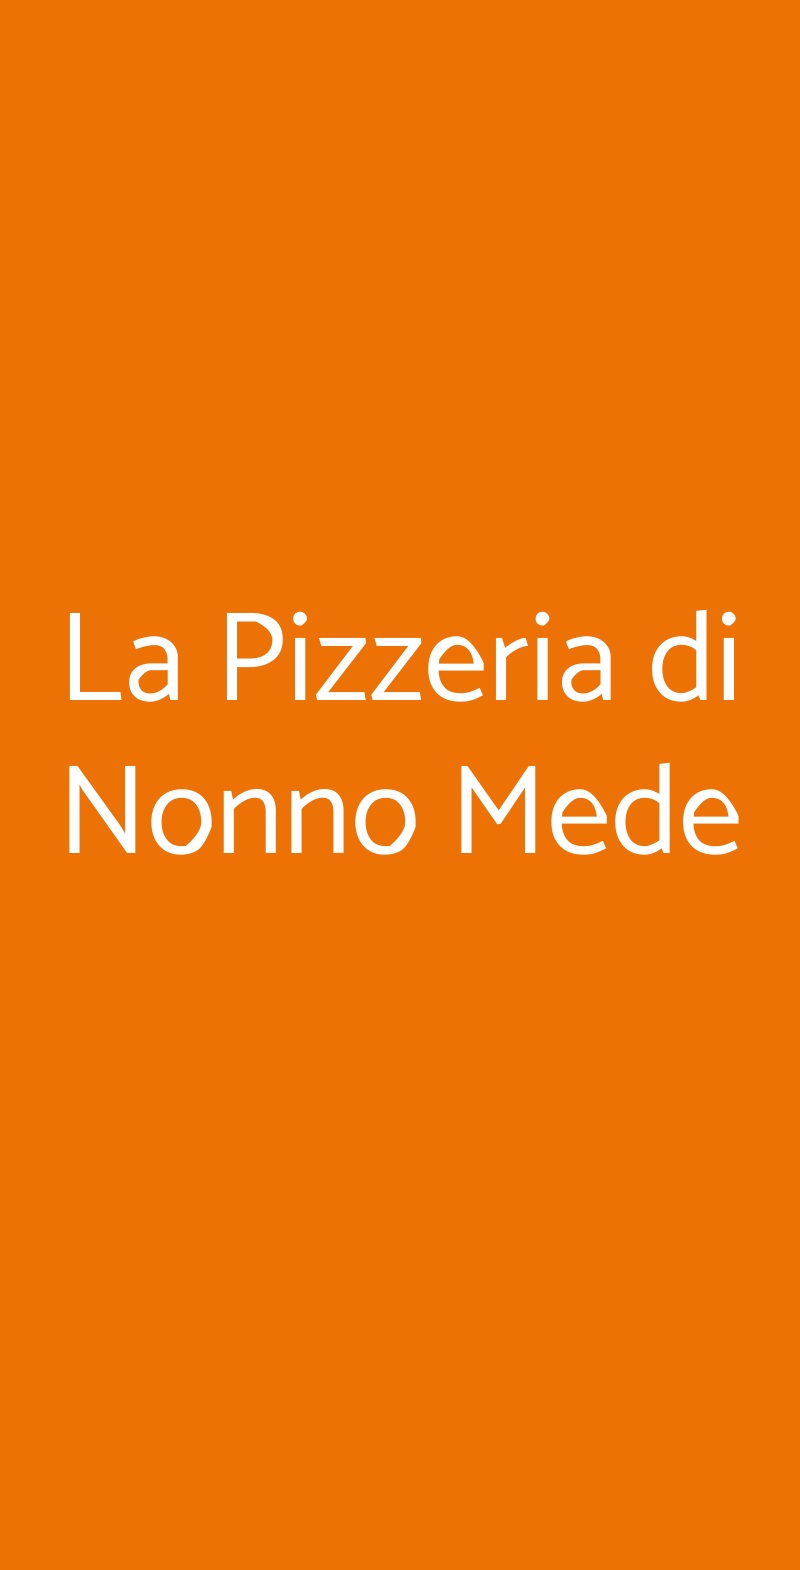 La Pizzeria di Nonno Mede Siena menù 1 pagina